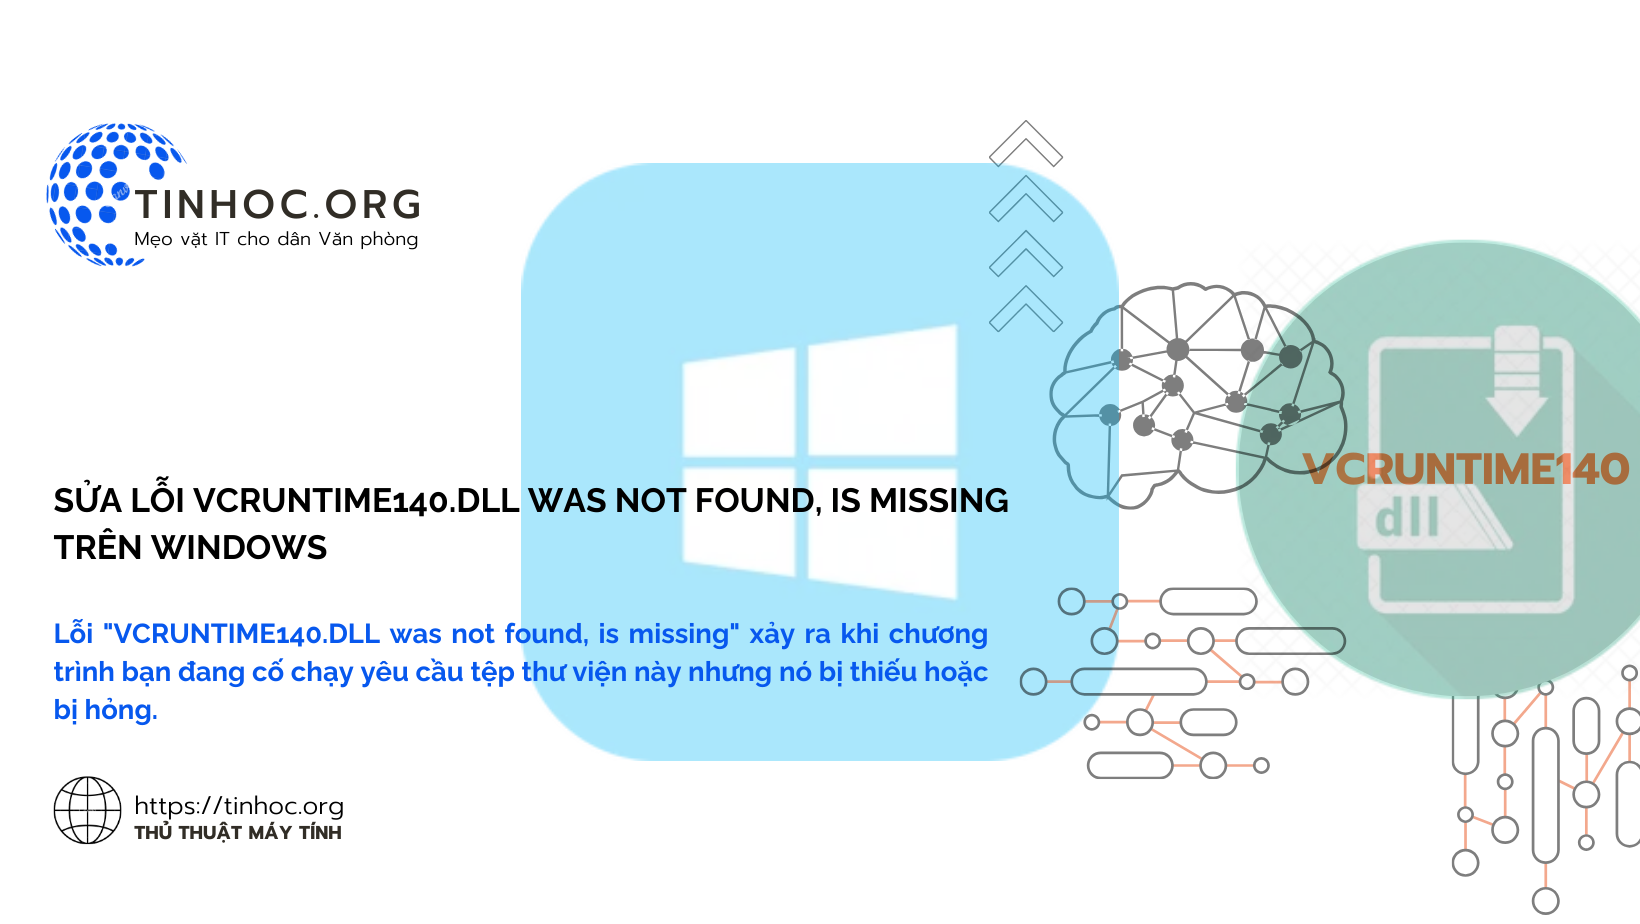 Lỗi "VCRUNTIME140.DLL was not found, is missing" xảy ra khi chương trình bạn đang cố chạy yêu cầu tệp thư viện này nhưng nó bị thiếu hoặc bị hỏng.